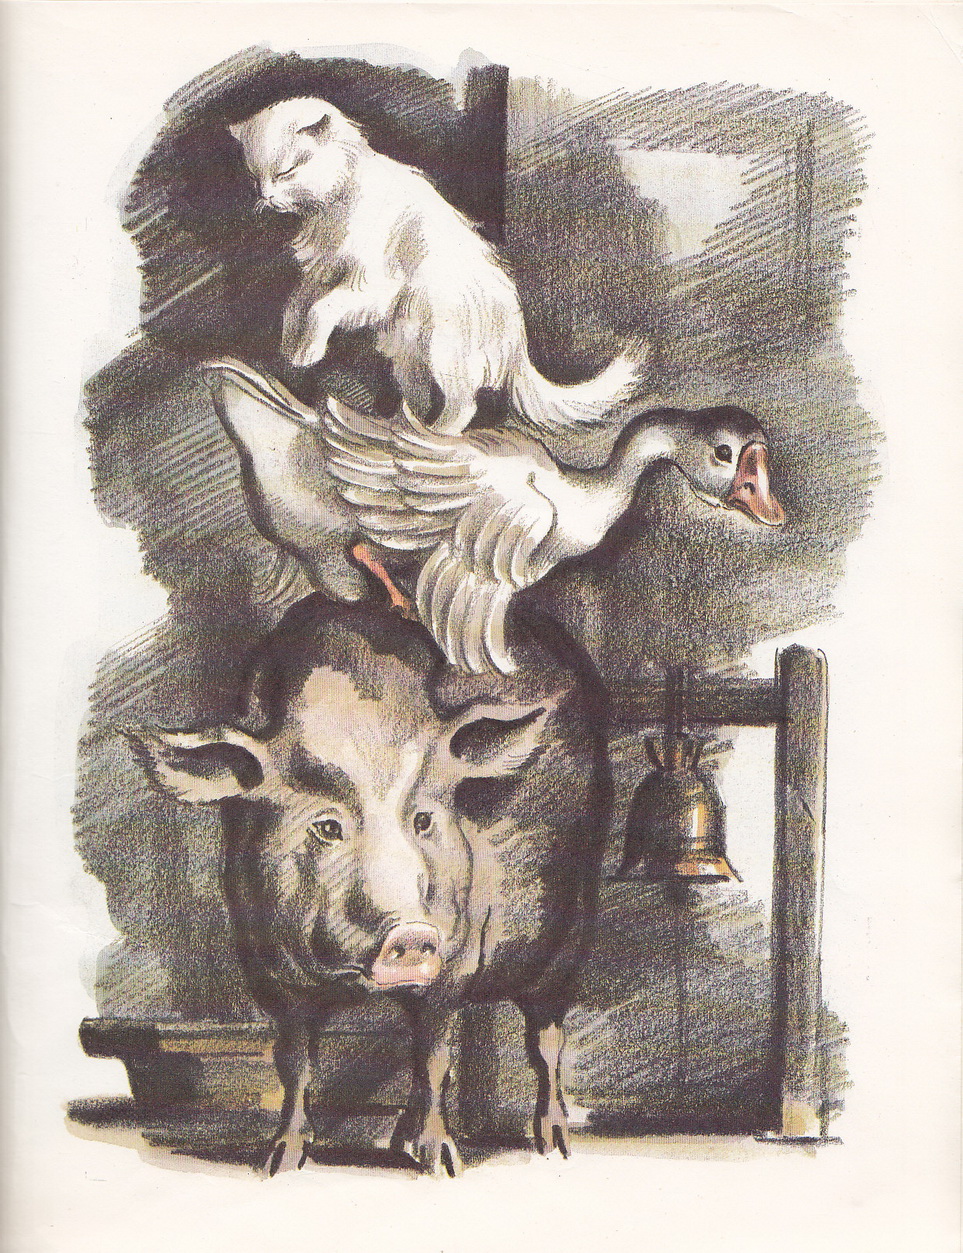 Нажмите для увеличения. Чехов, А.П. Каштанка. Иллюстрации Б. Алимова (фото книги из фонда библиотеки)